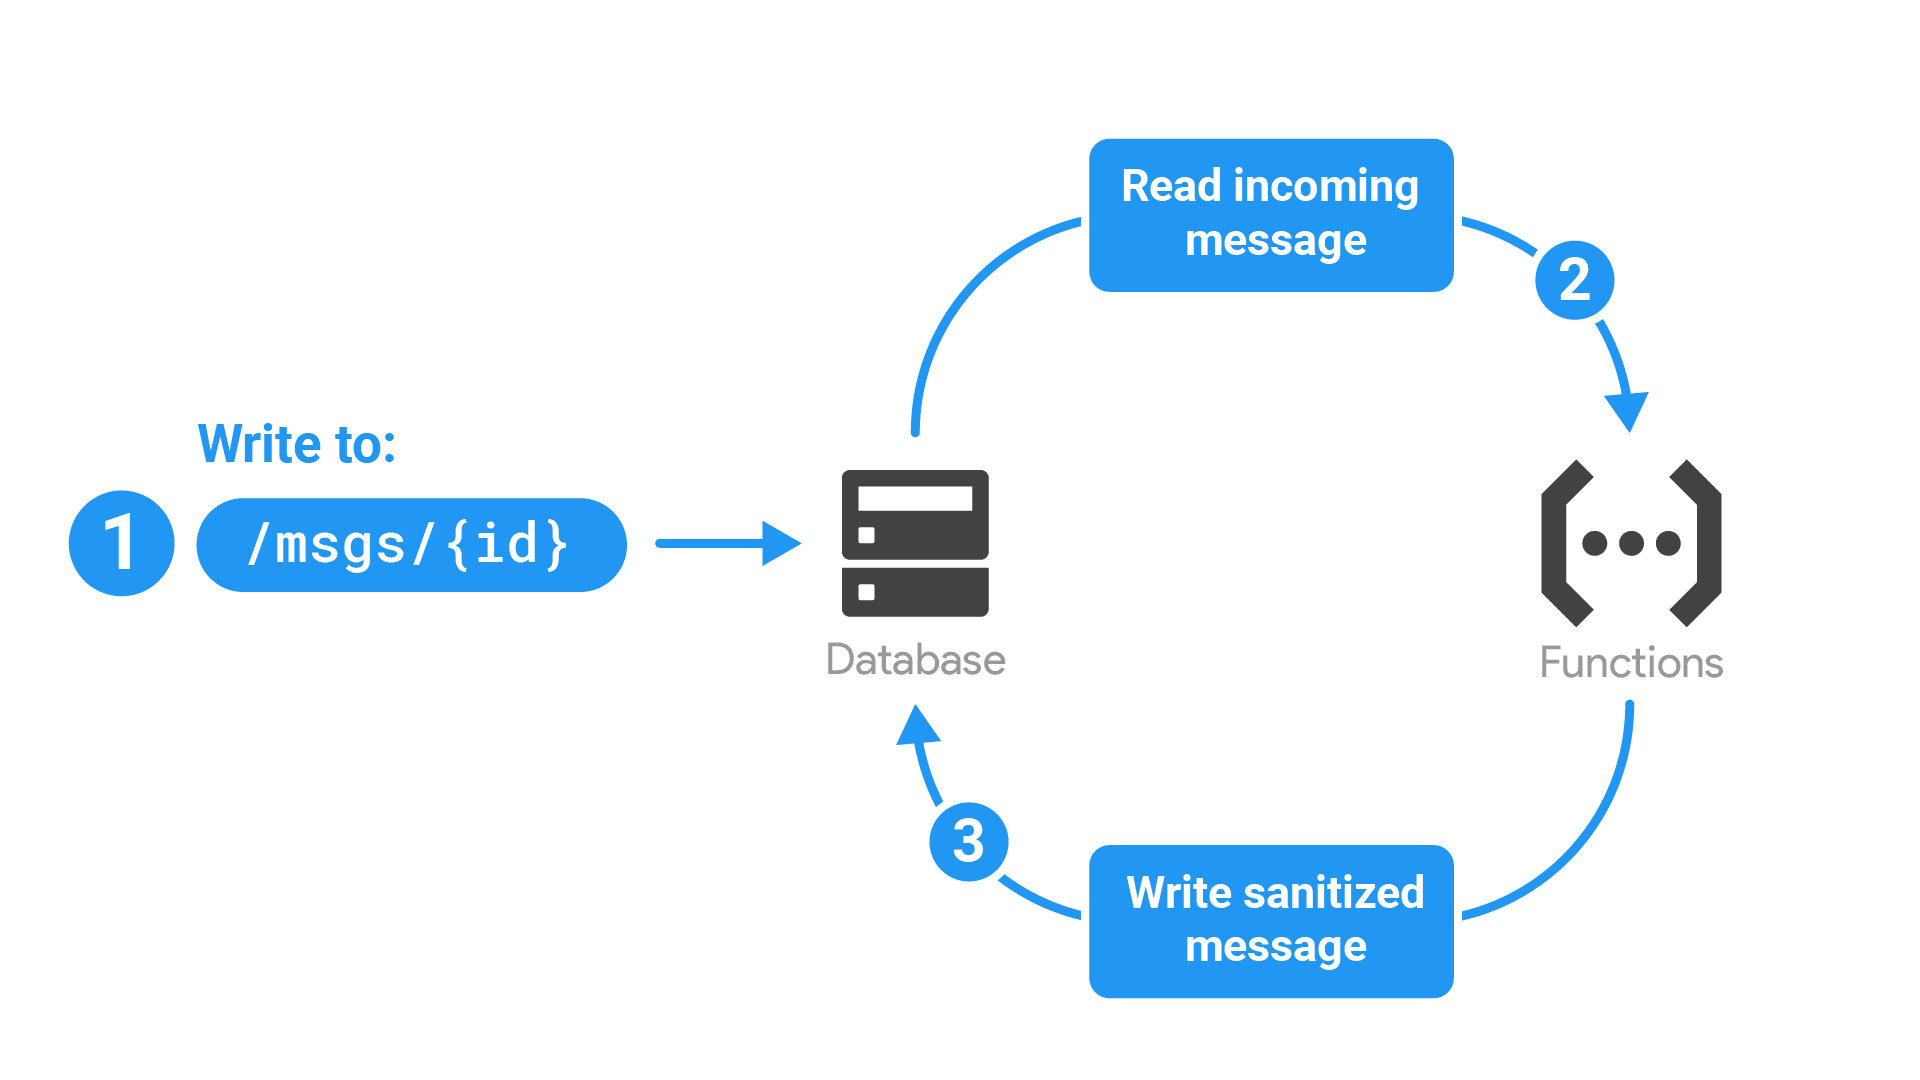 Schemat przedstawiający poniżej proces obsługi aplikacji